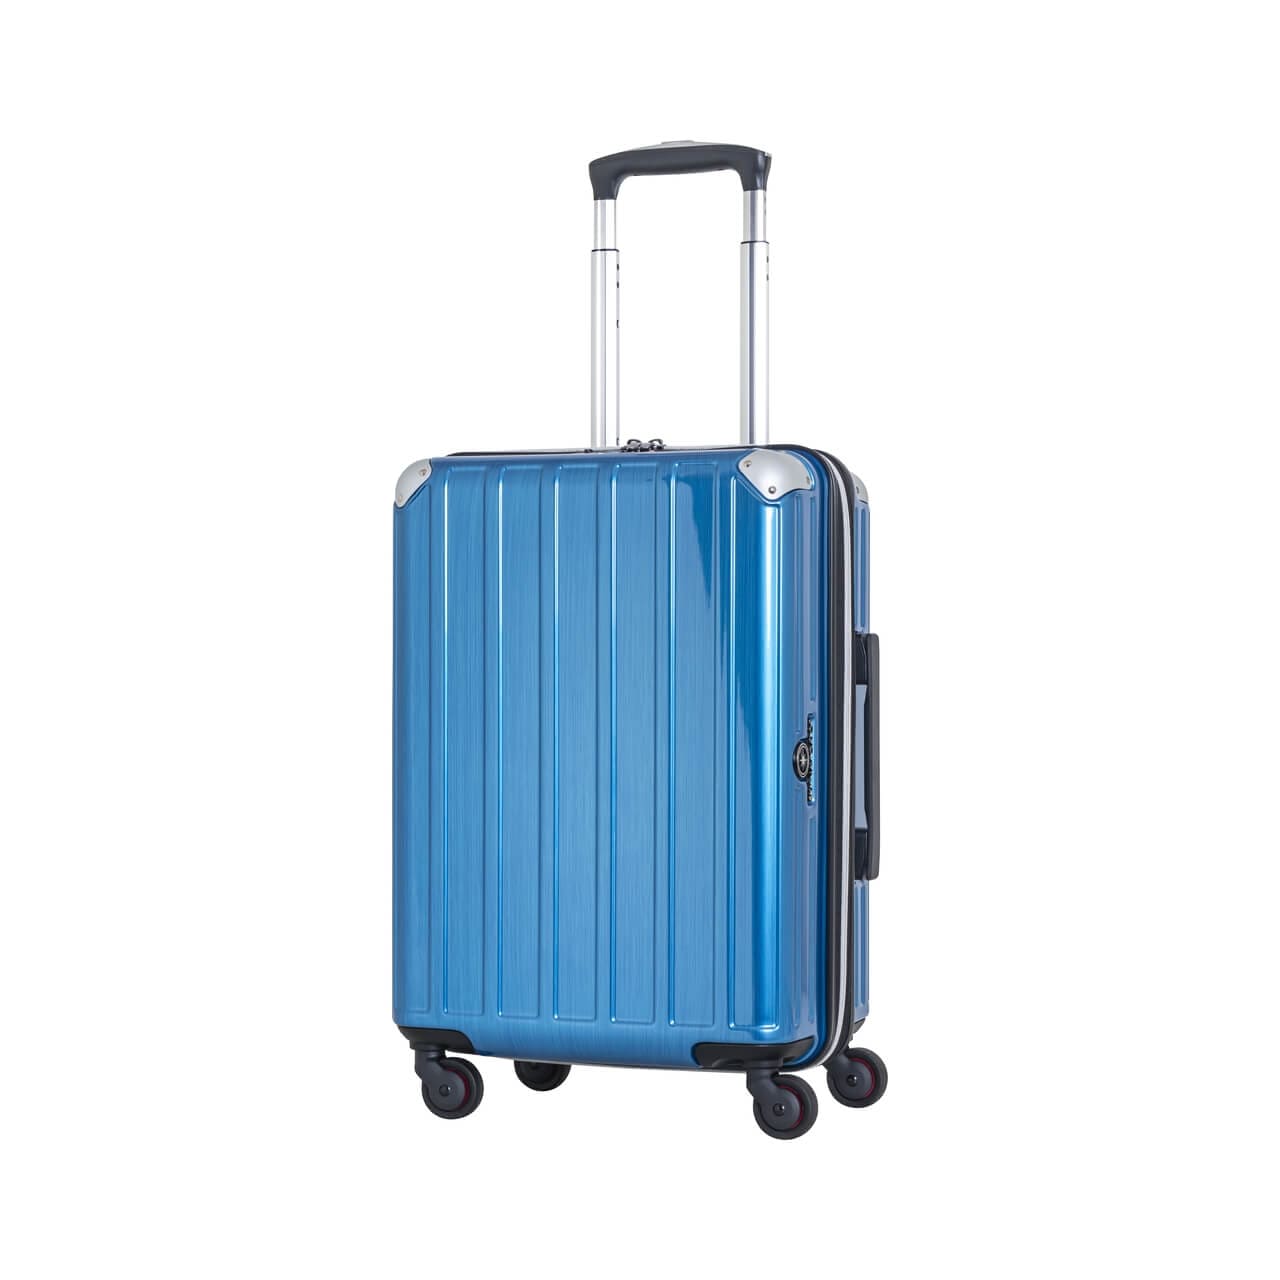 SKYNAVIGATORのスーツケースSK-0739-50のブルーヘアラインの正面振り画像